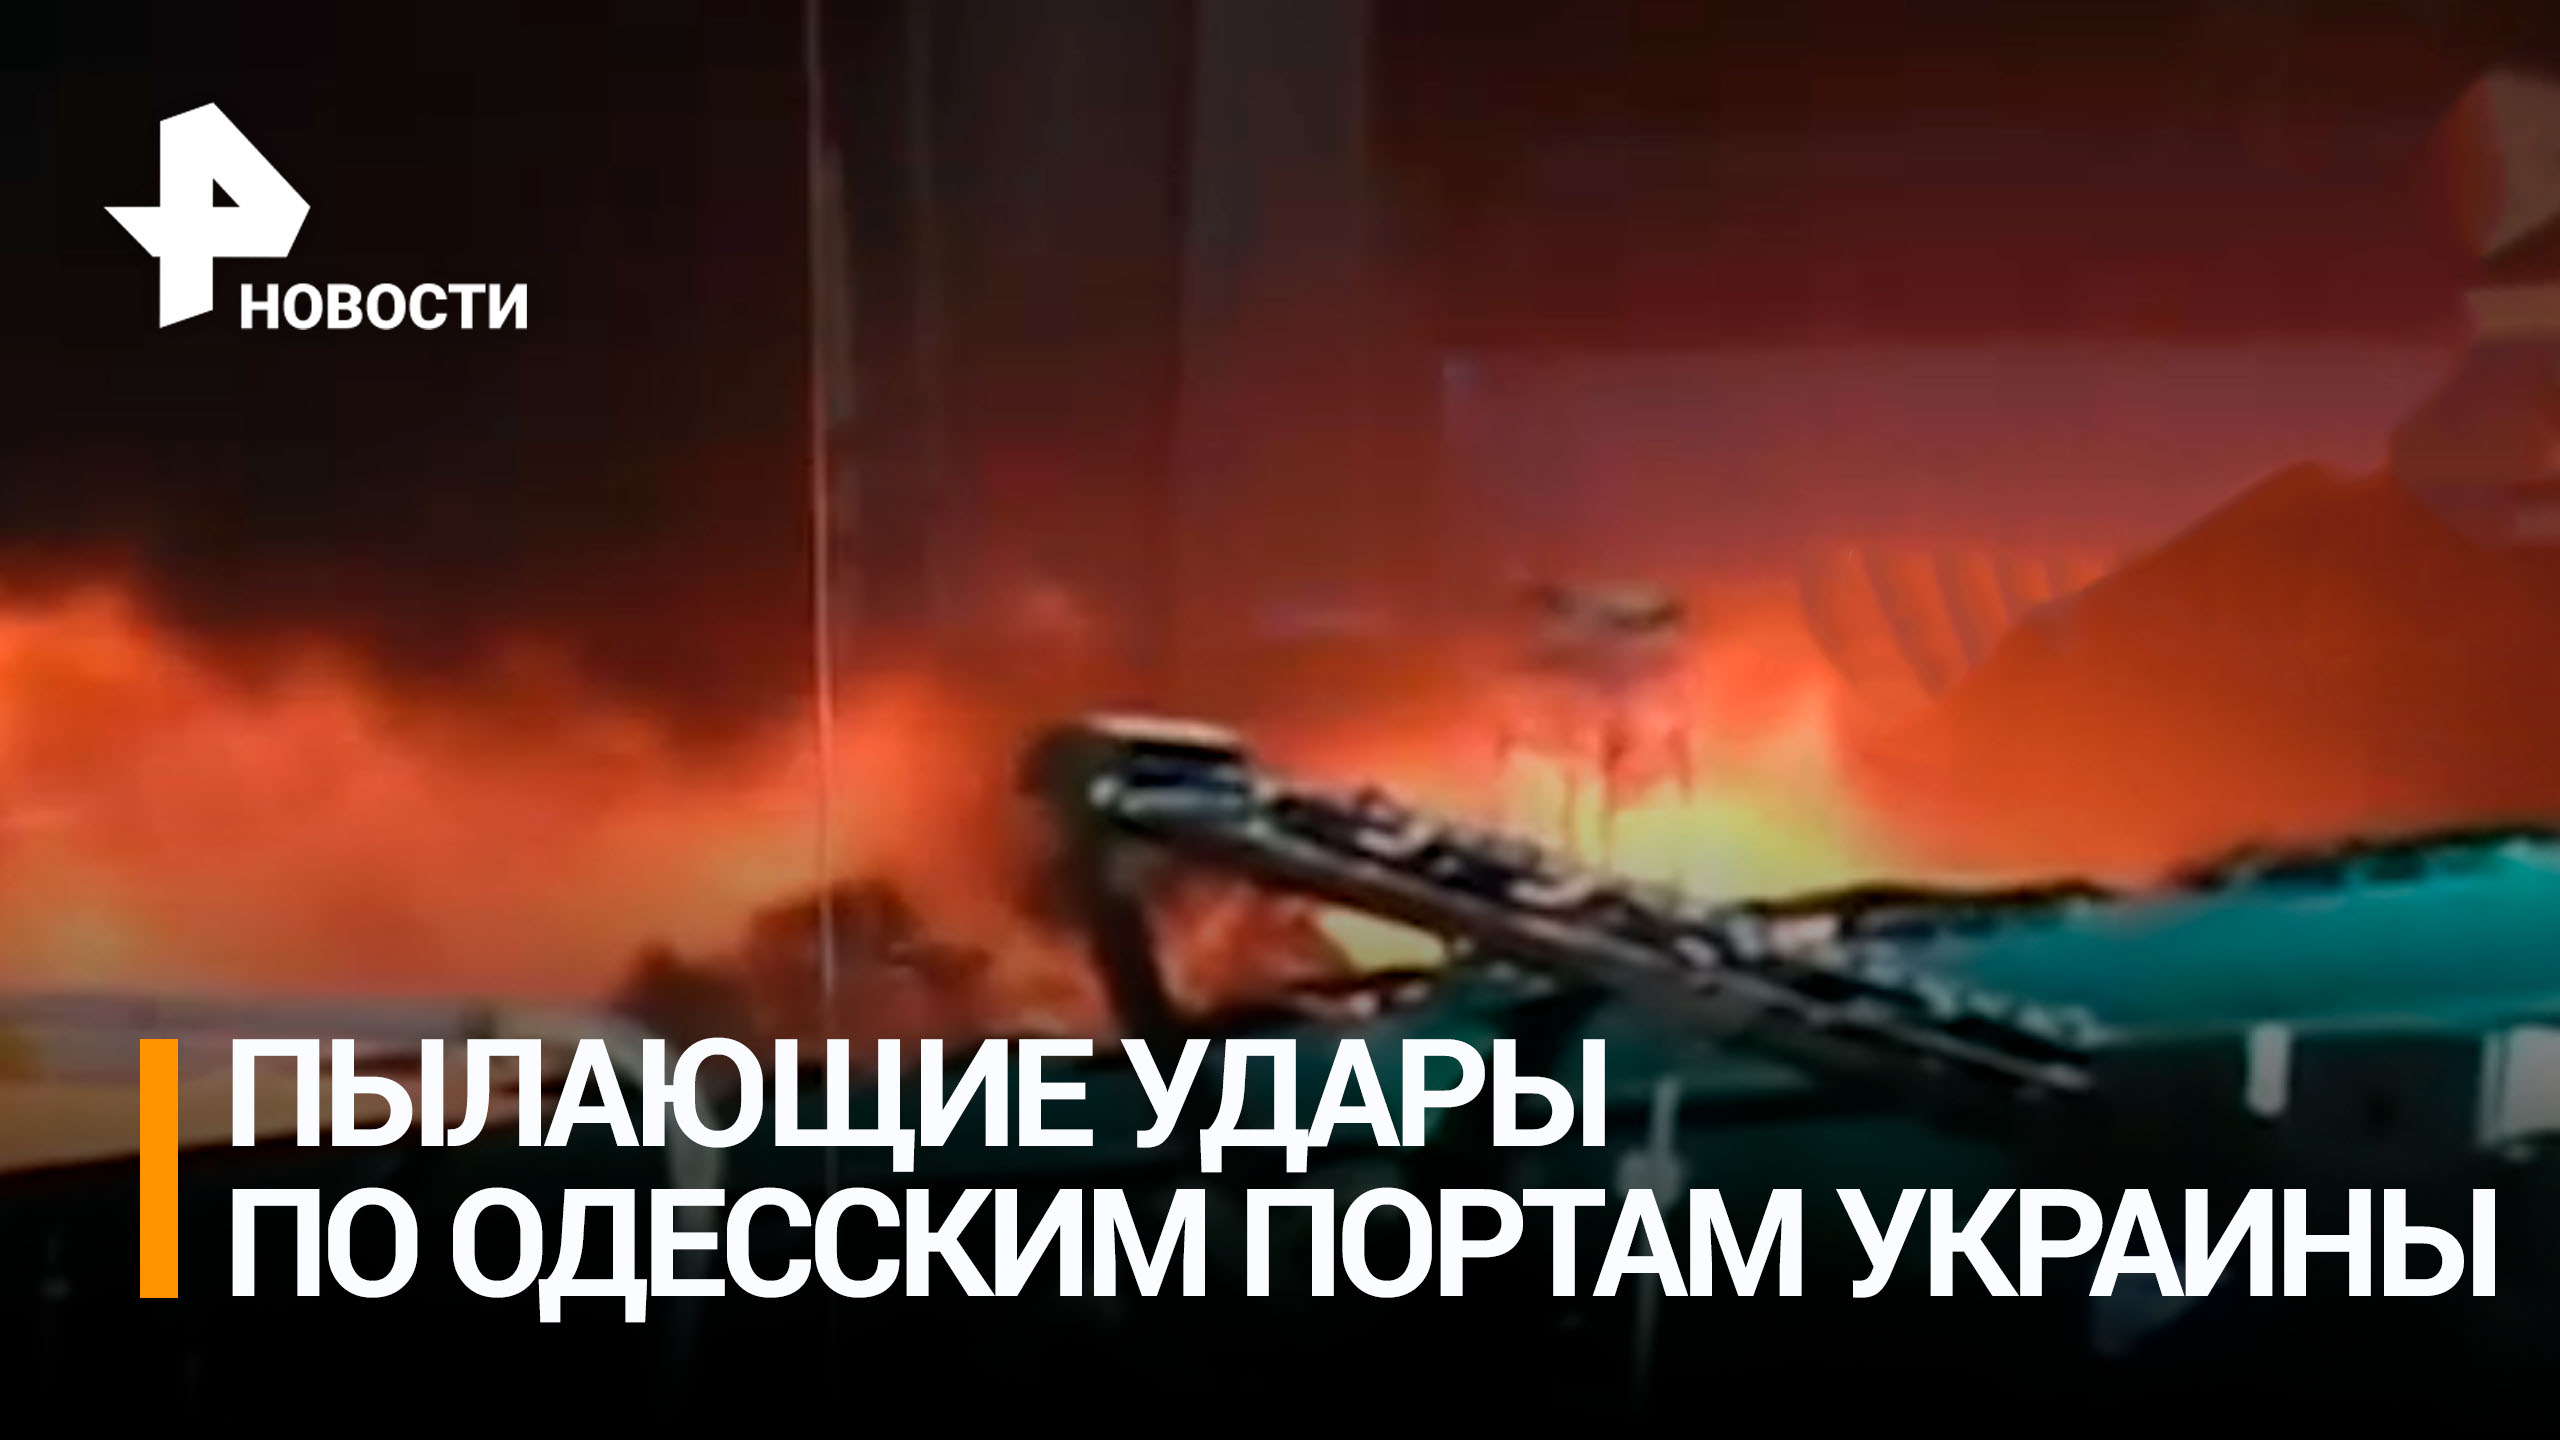 На Украине сообщили о поражении объектов в порту под Одессой / РЕН Новости